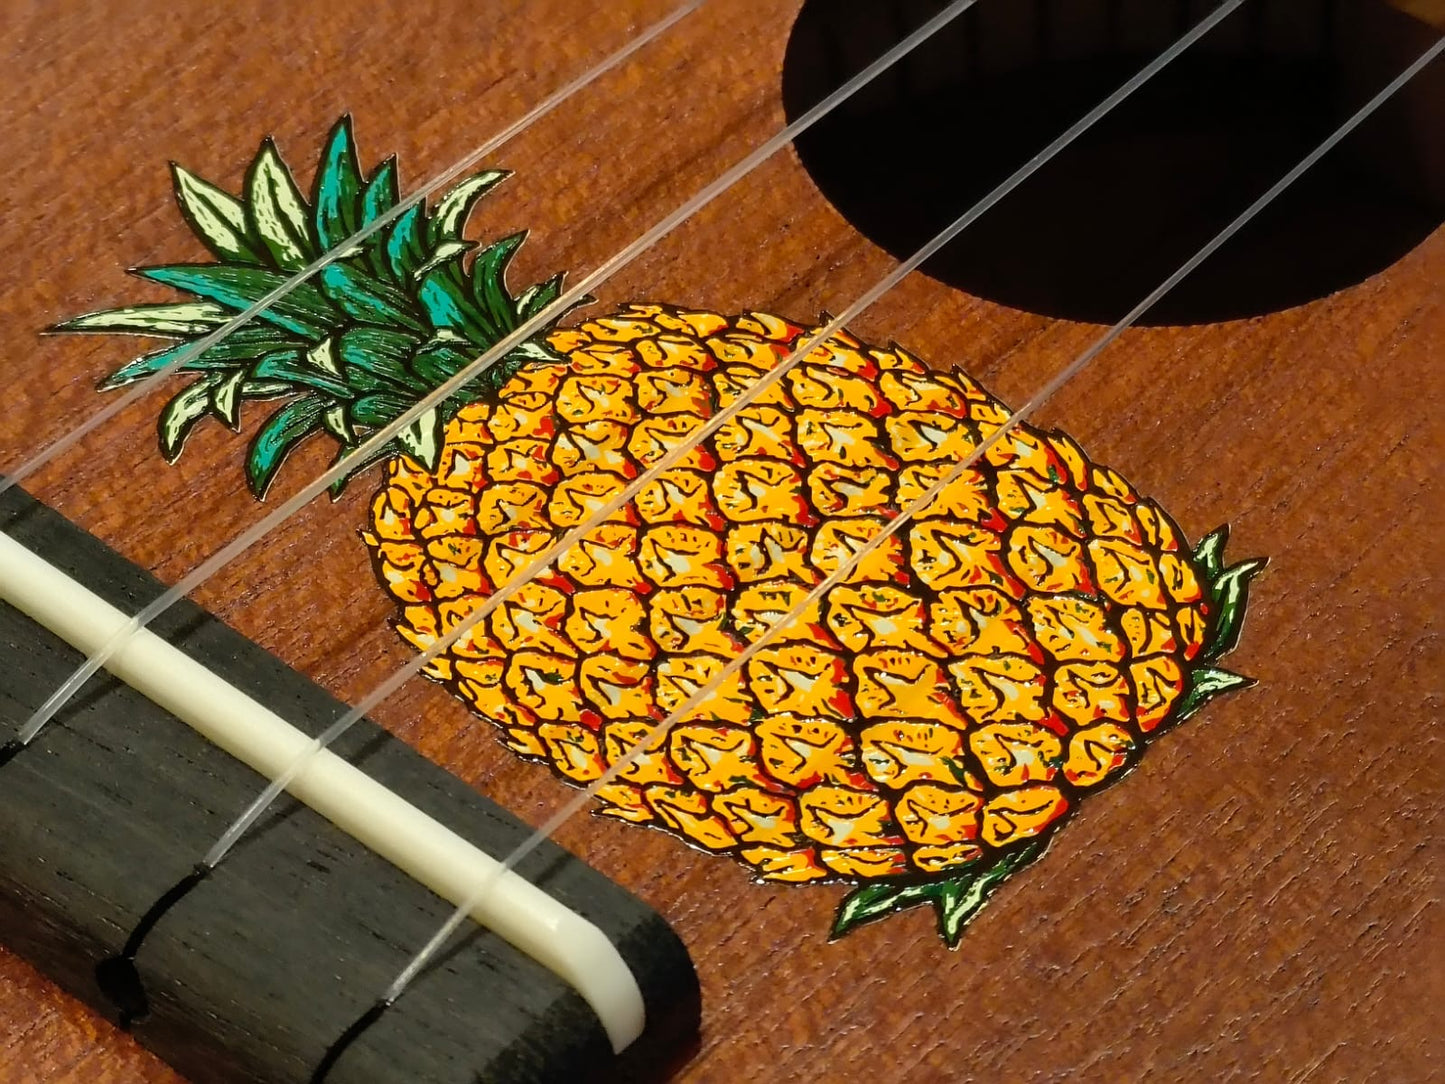 Kiwaya Baby Pineapple Ukulele with Pineapple Sticker